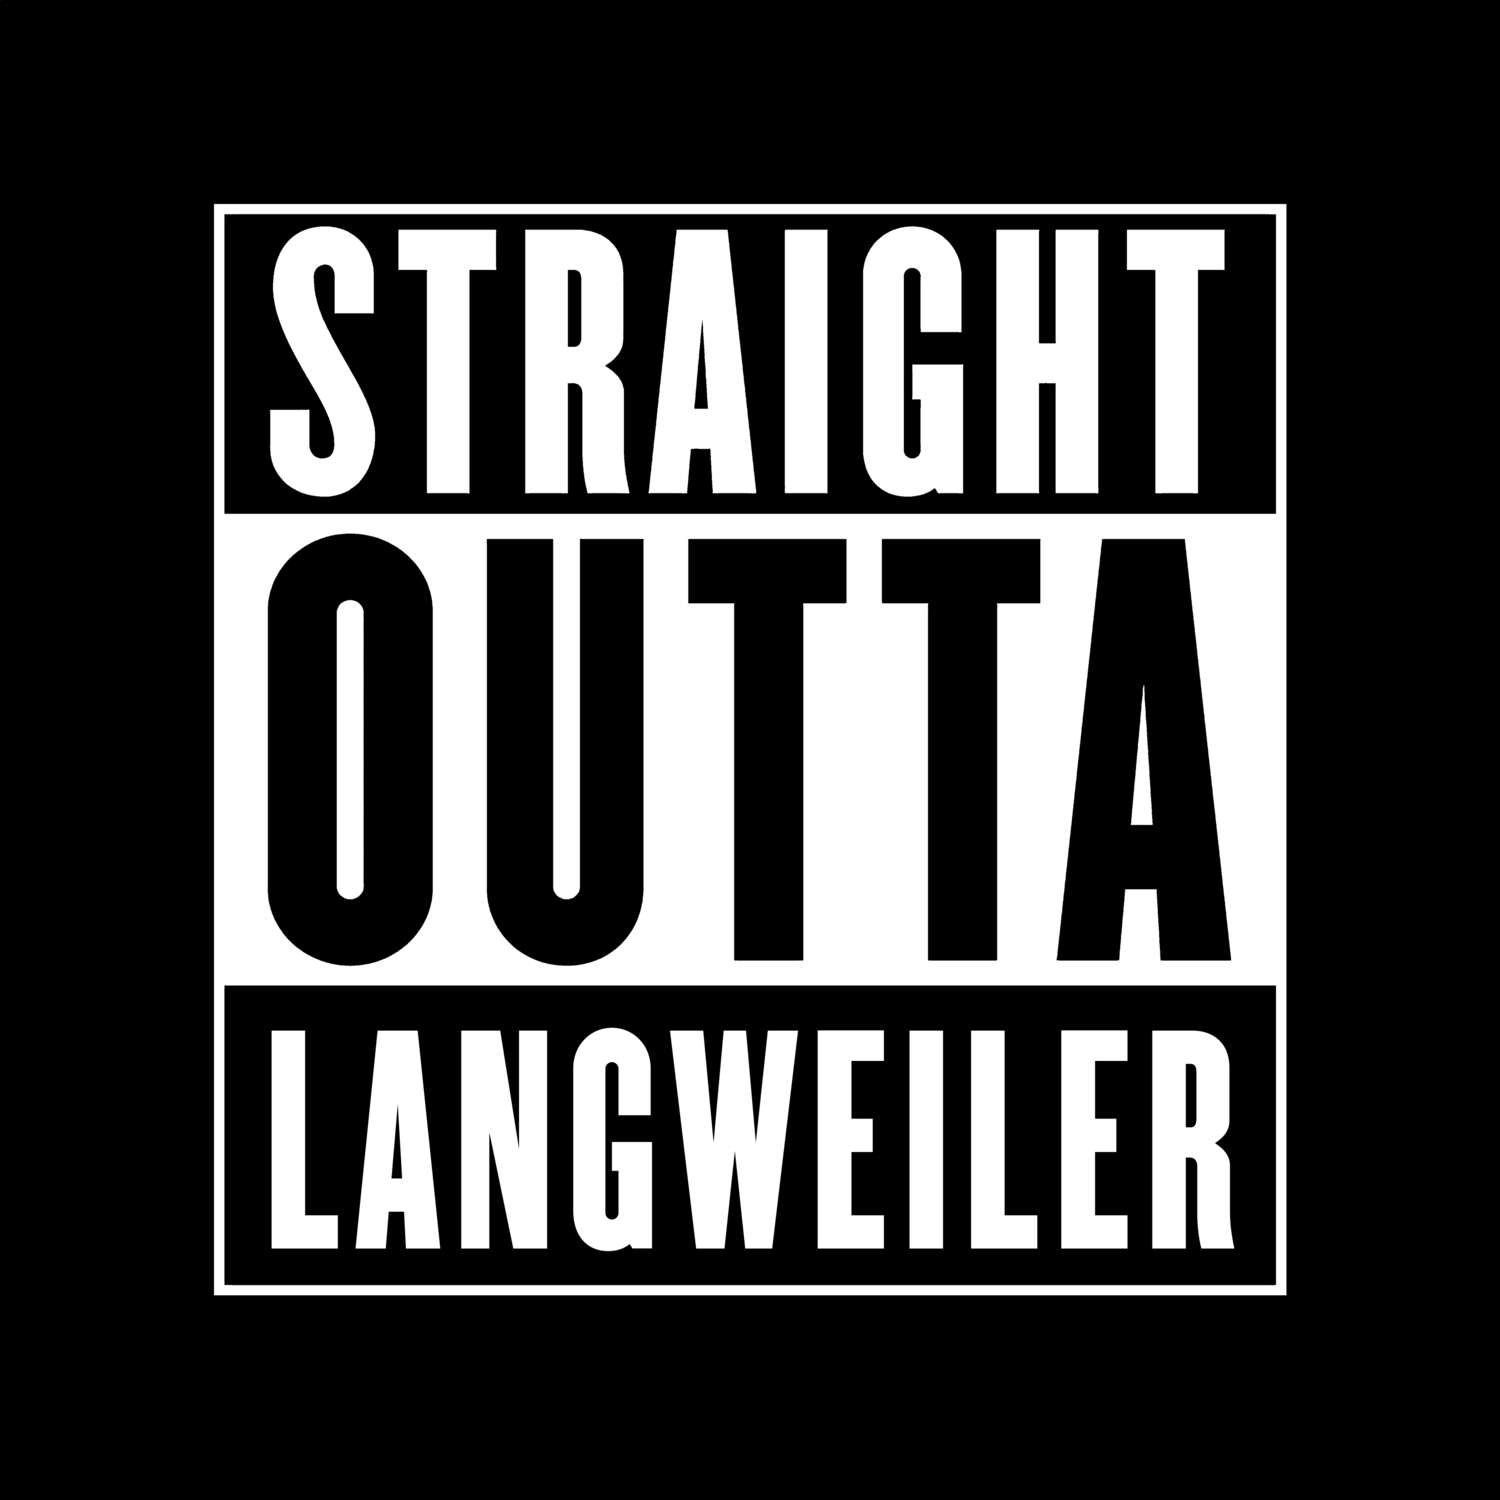 Langweiler T-Shirt »Straight Outta«